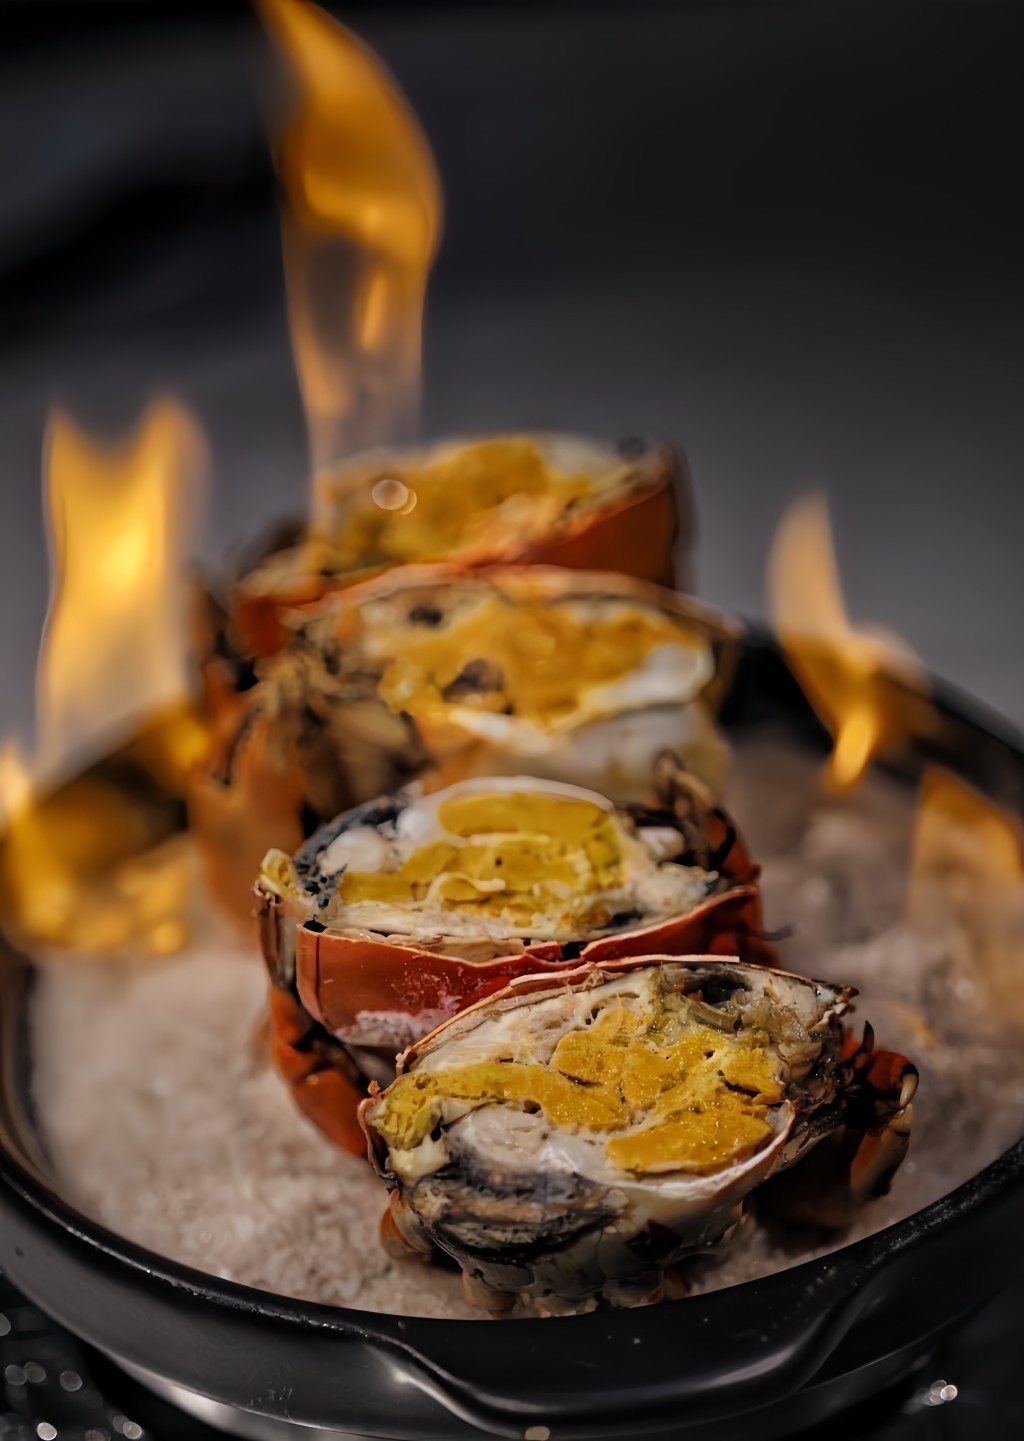 火焰奄仔蟹（2人套餐），每只至少10両重的顶级奄仔蟹以油盐烹制后，加入特调的酒及点火，烧出鲜蟹的甜味。